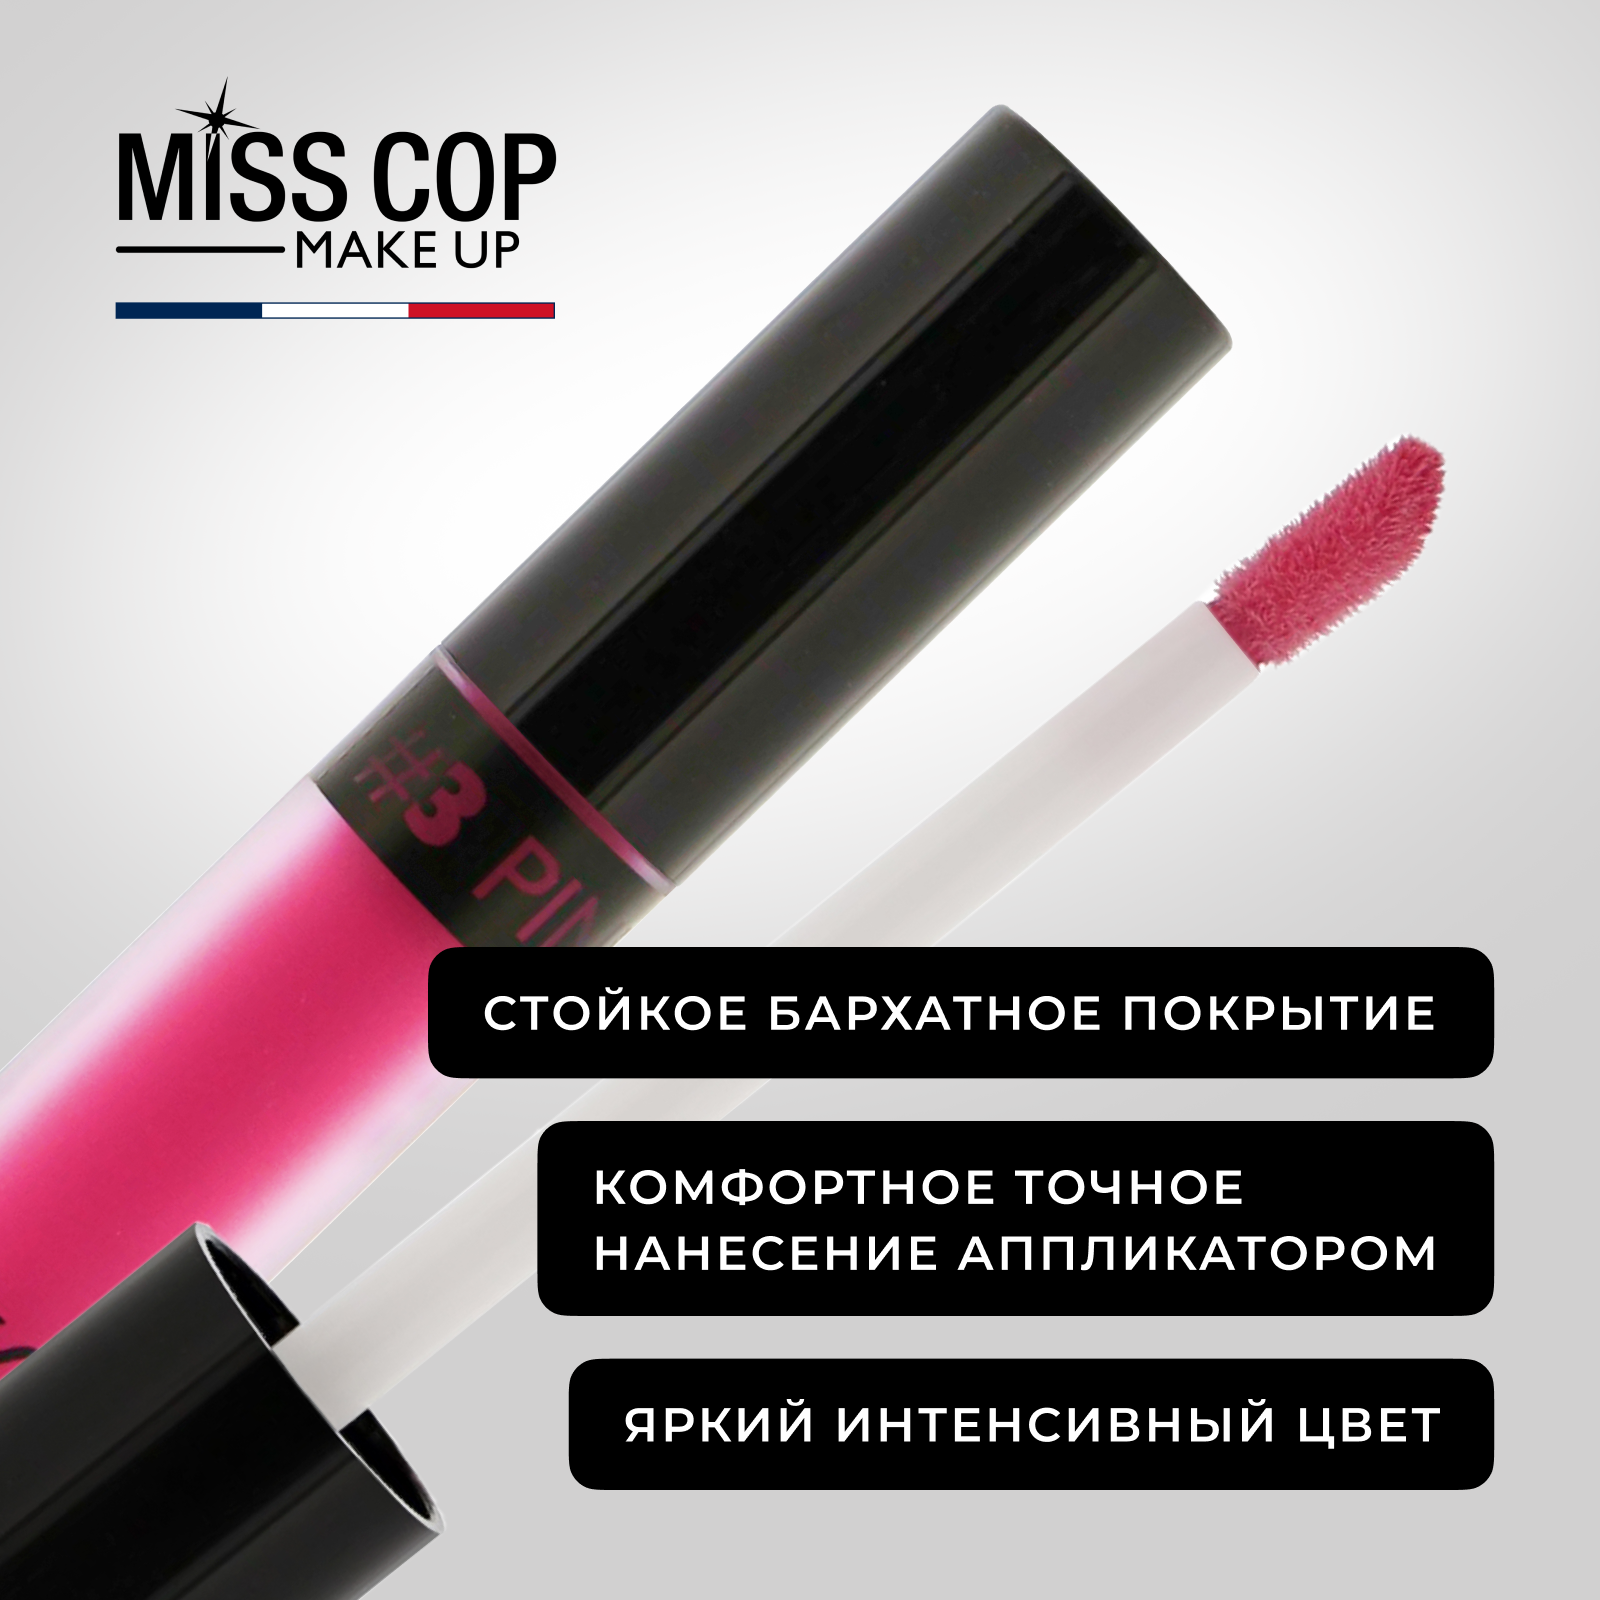 Жидкая губная помада Miss Cop матовая стойкая розовая Франция цвет 03 Pink 2 мл - фото 5